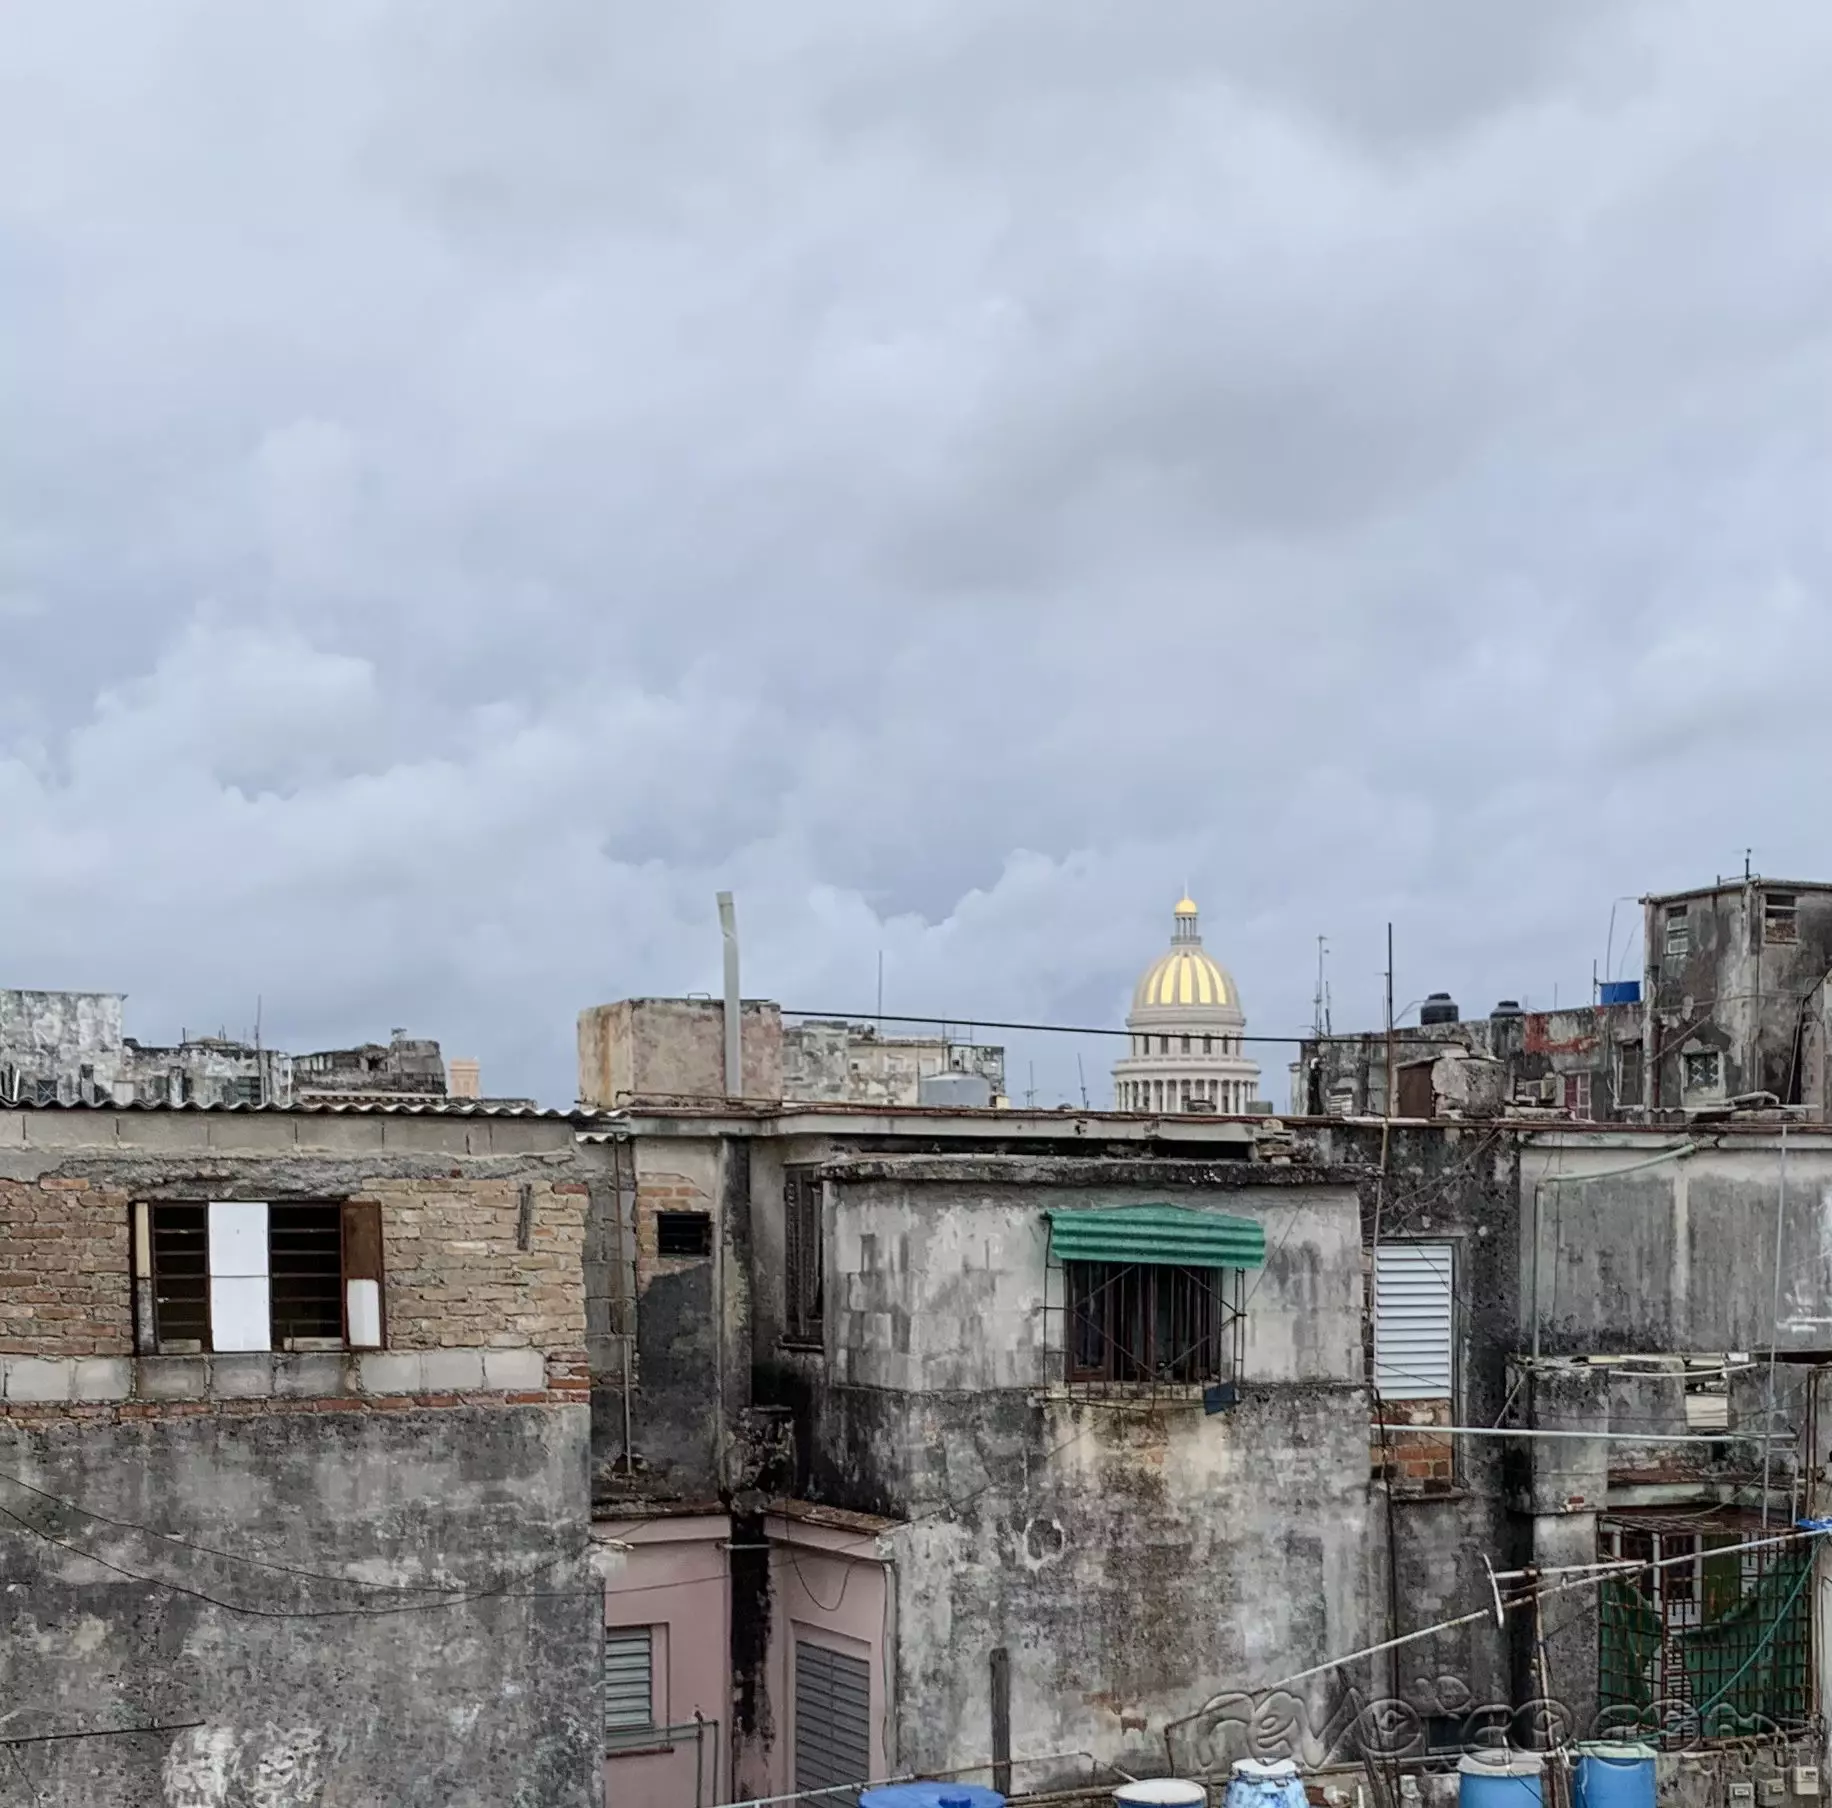 Vendo apartamento de lujo en la Habana Vieja listo para vivir o alquilar 5673455